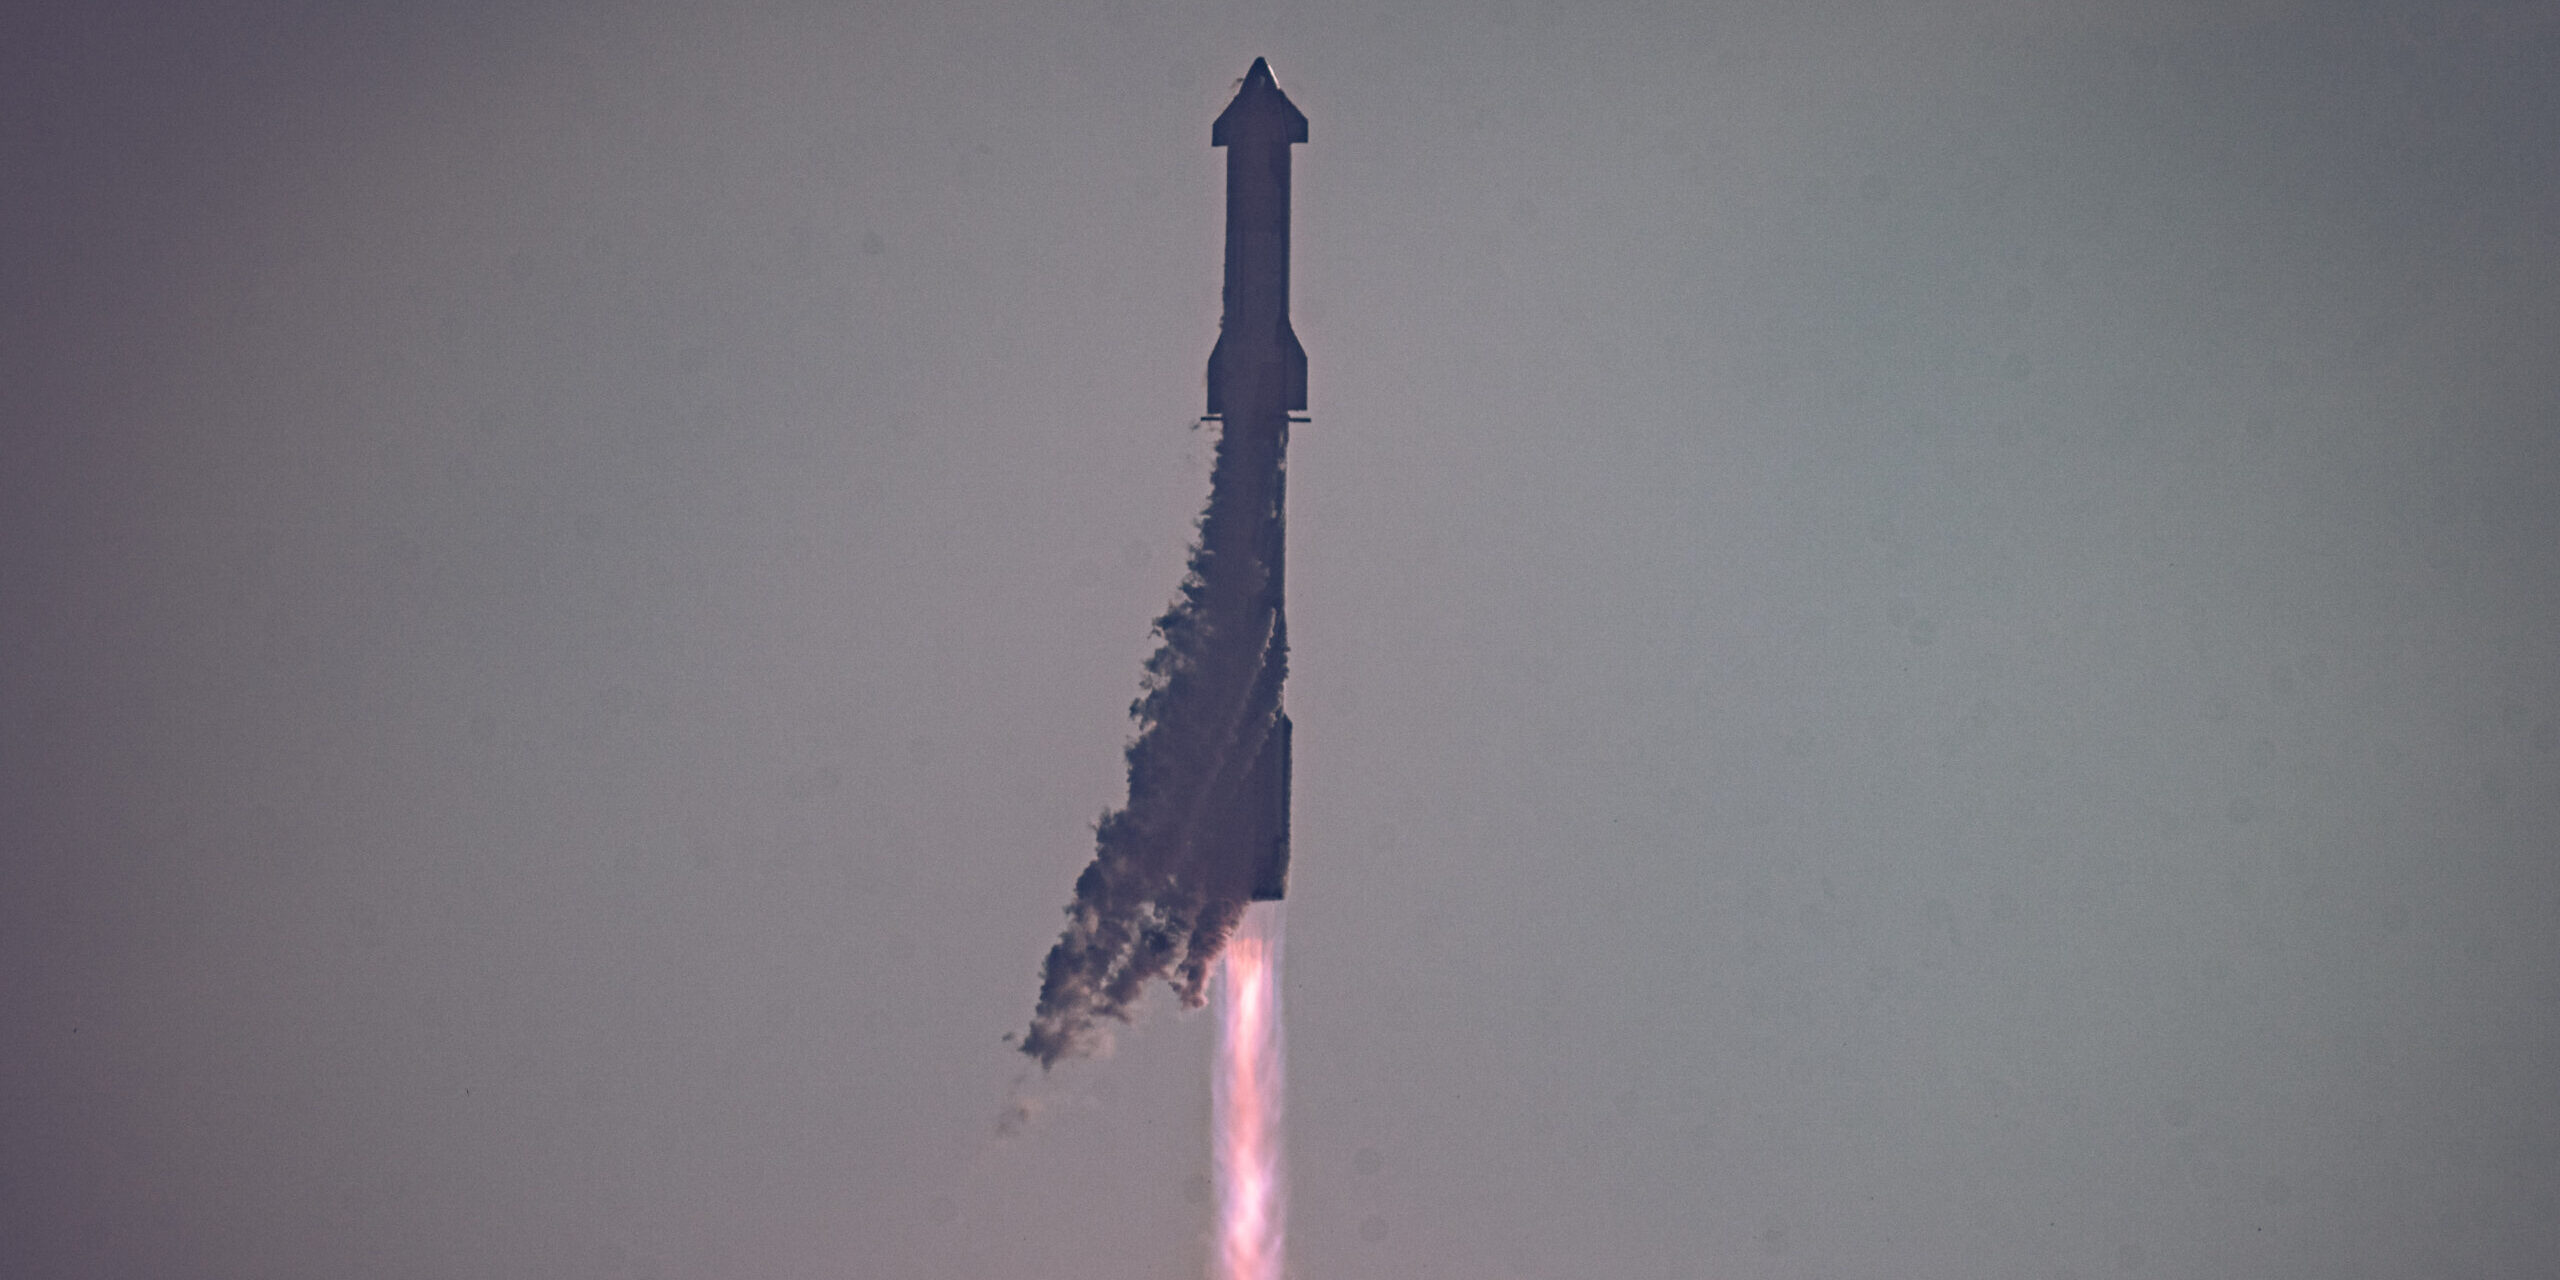 Lancering Starship van SpaceX succesvol verlopen ondanks zorgen omwonenden